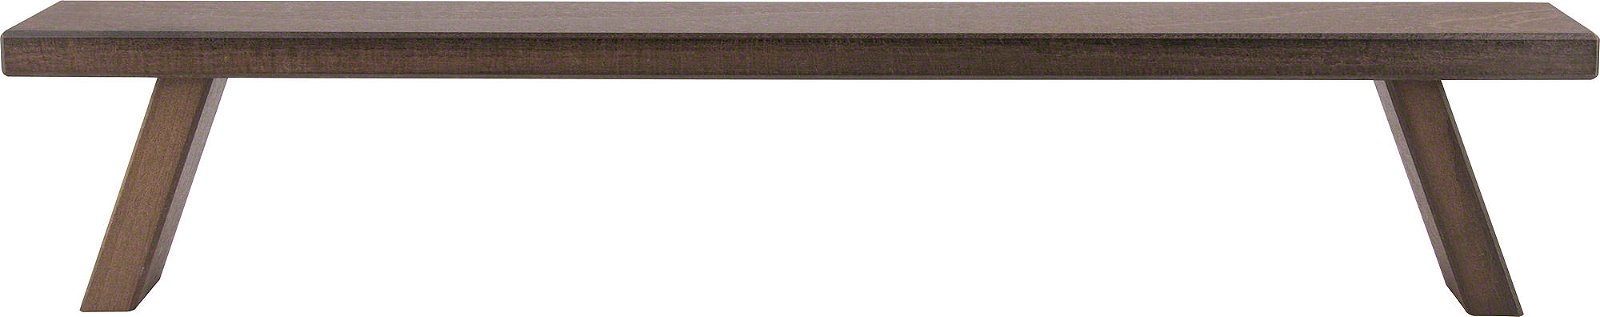 Weigla Schwibbogenbank von cm) Holzkunst braun (60×11×7,5